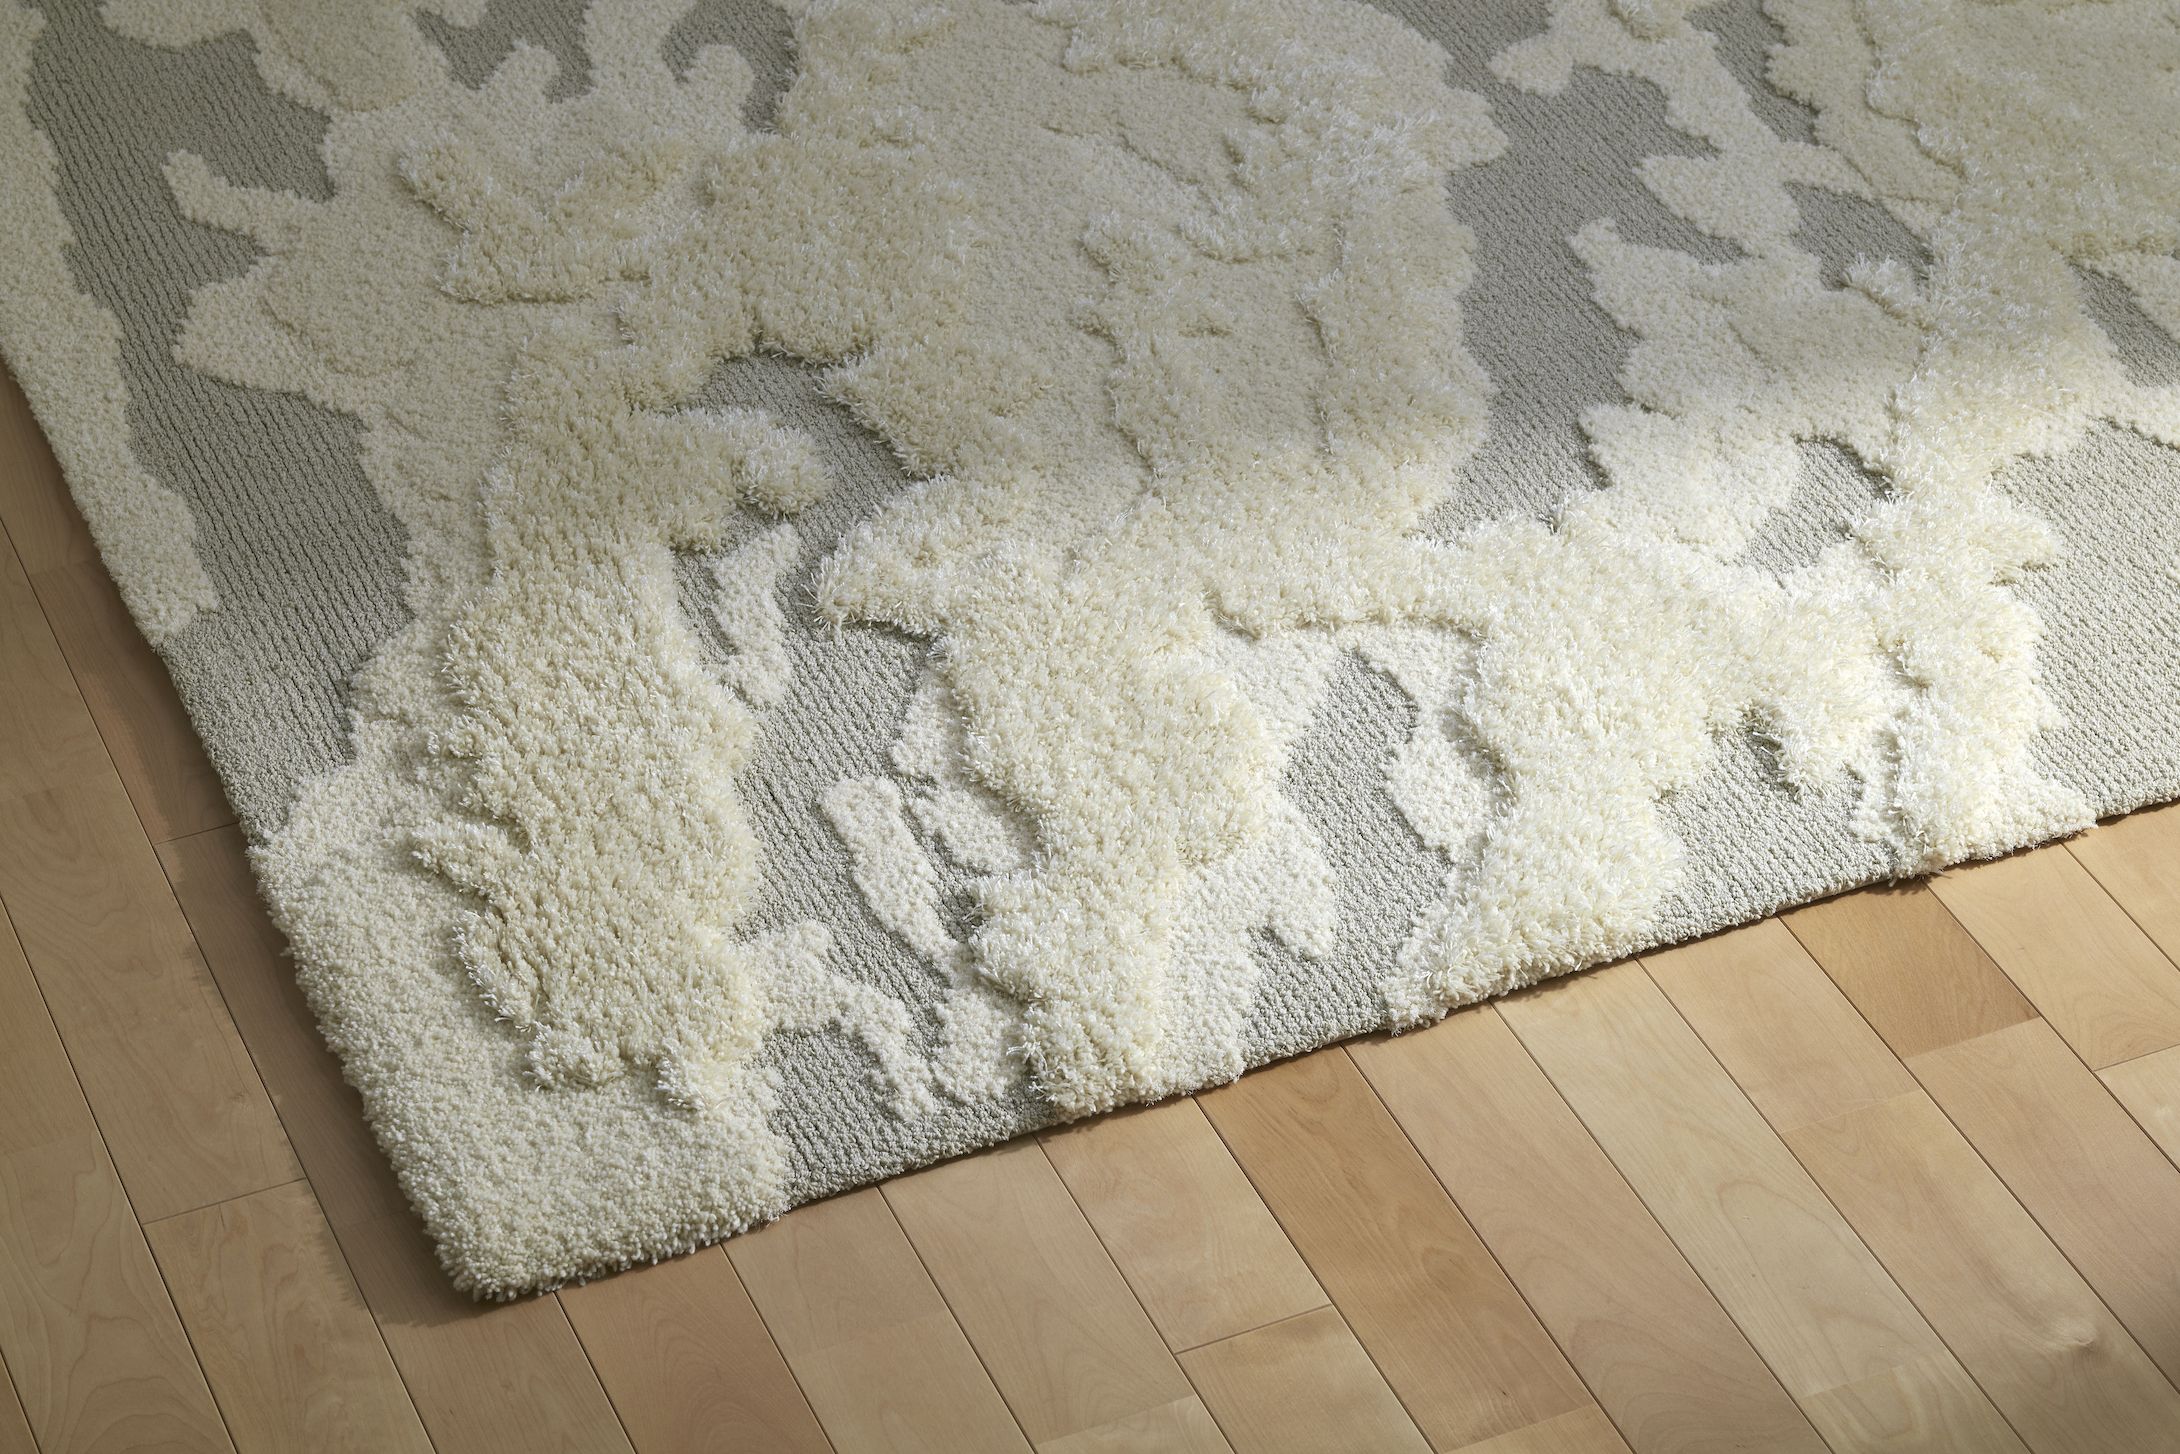 隈 研吾デザインによる新作絨毯「WASHI」が大塚家具にて展示販売スタート